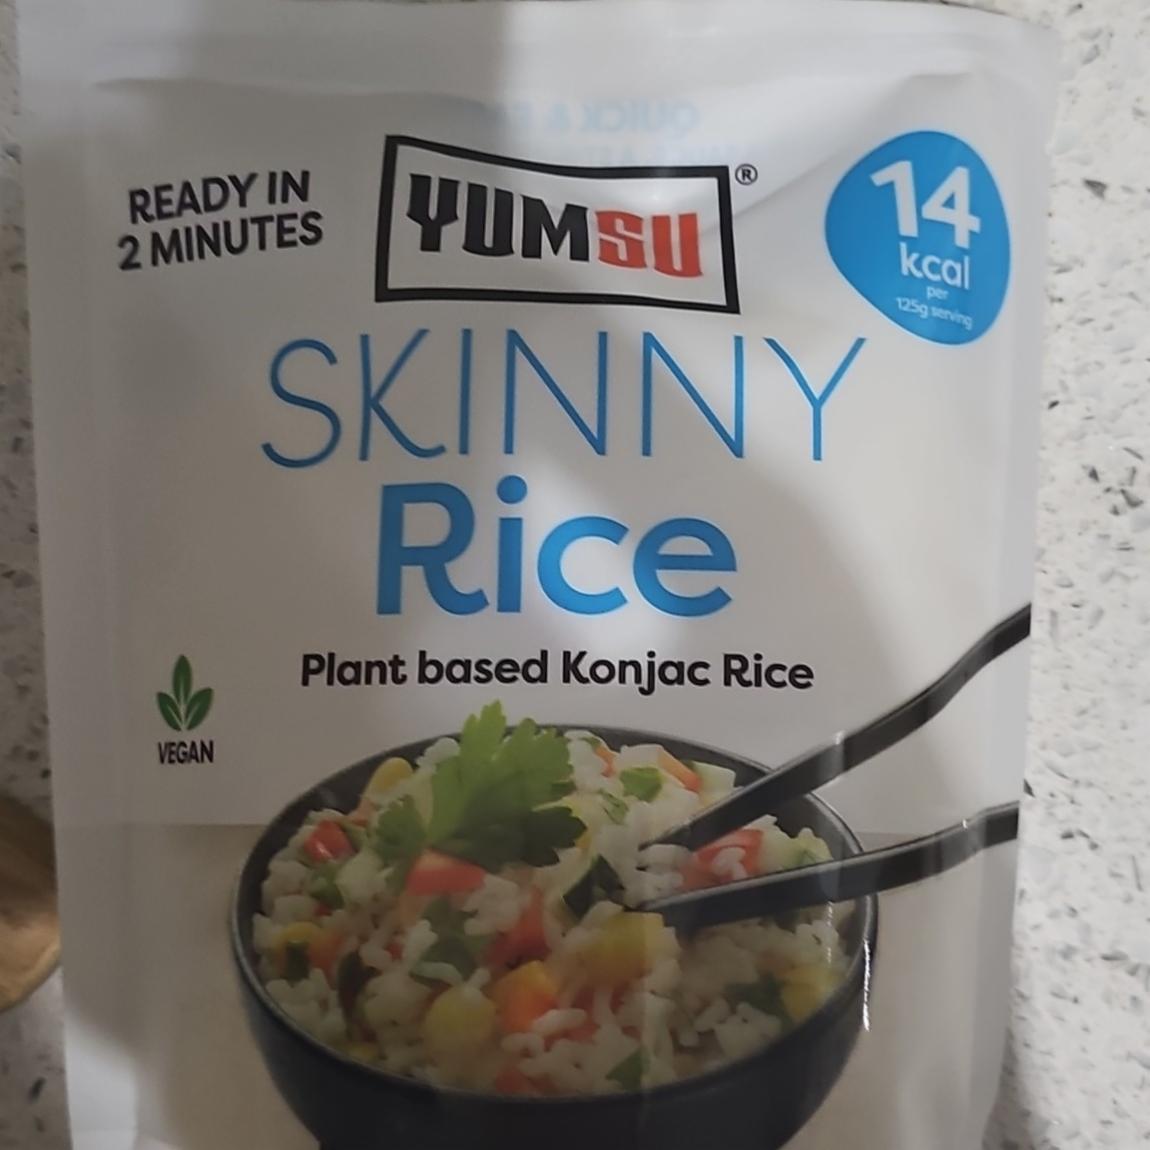 Fotografie - YUMSU Skinny Rice Plant based Konjac Rice